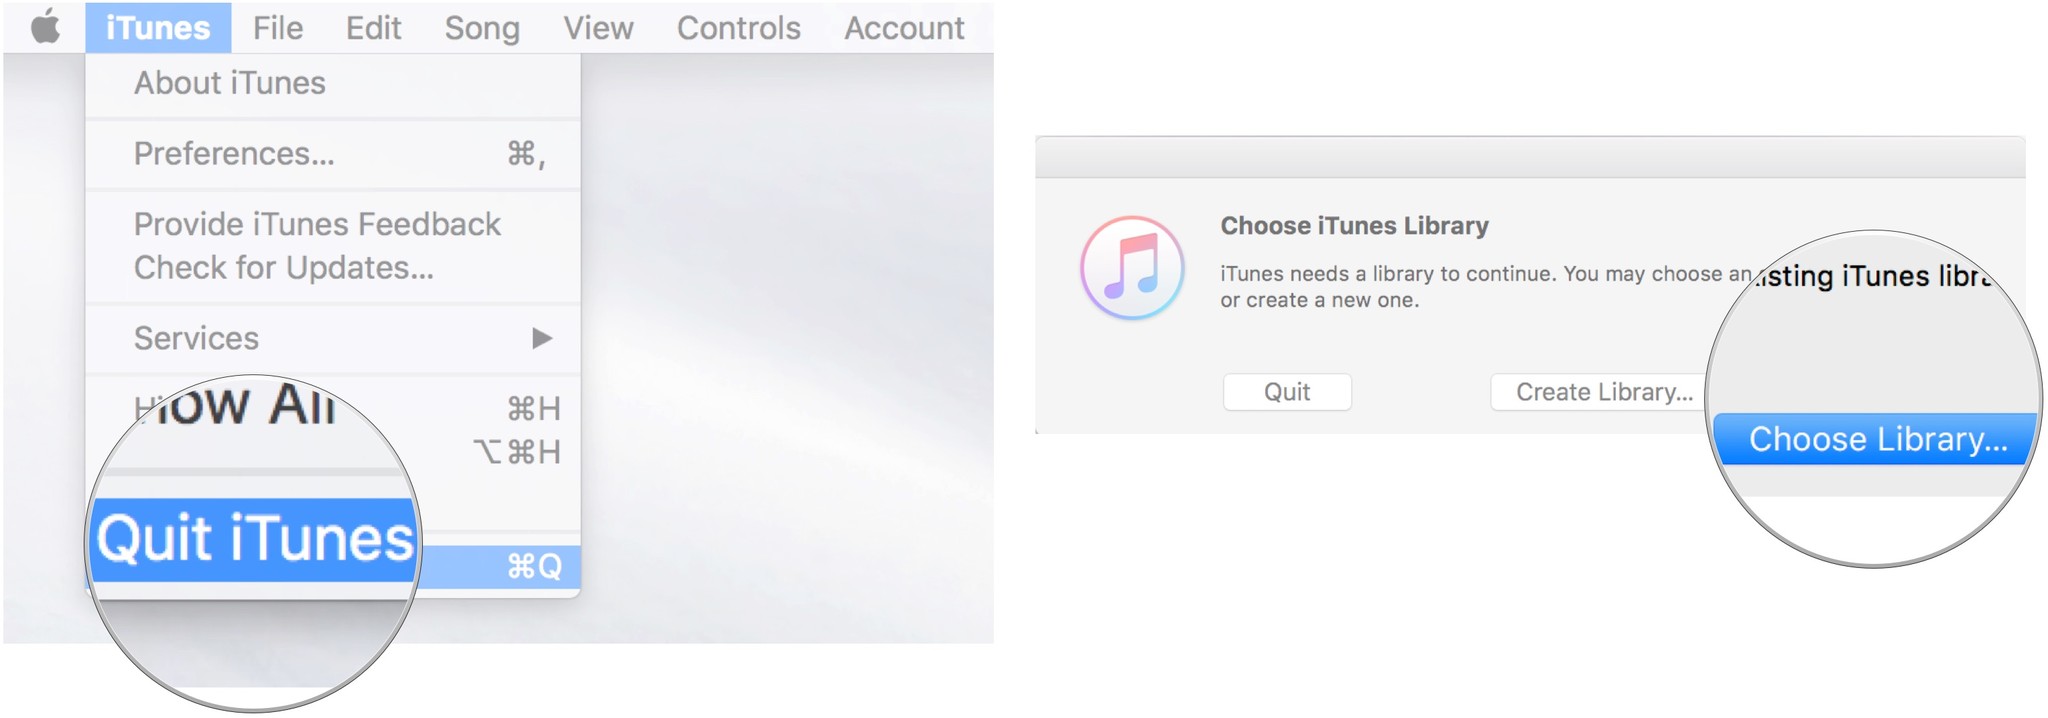 Закройте iTunes, затем запустите iTunes, удерживая клавишу Option, затем нажмите «Выбрать библиотеку».